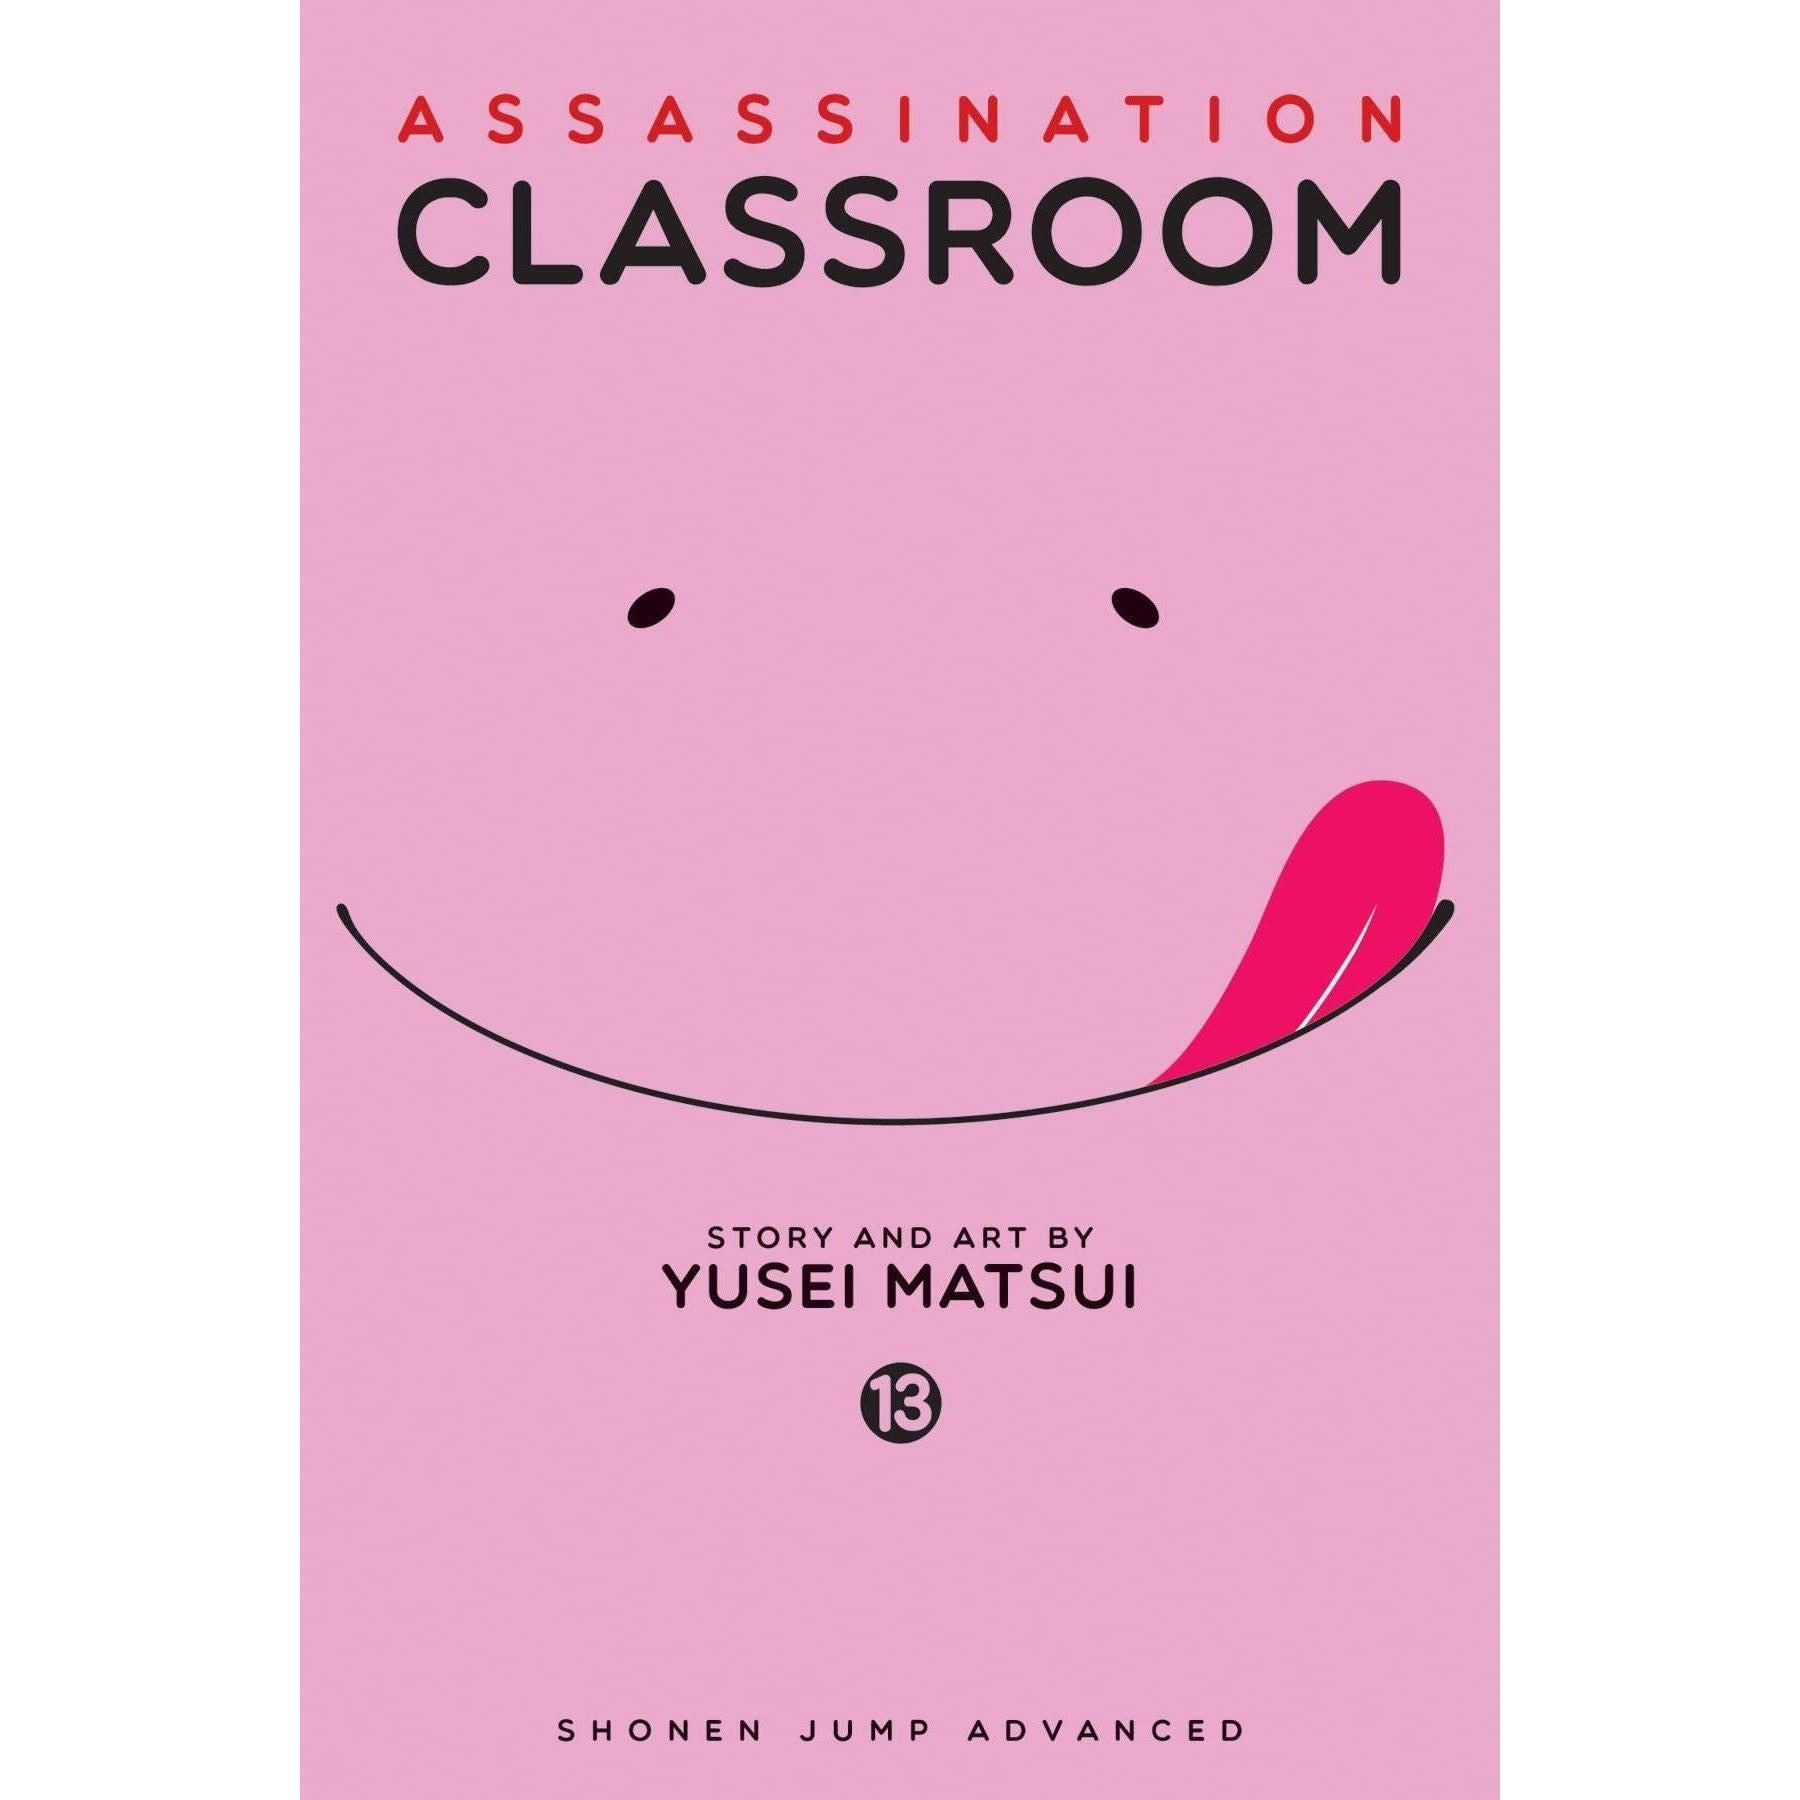  Assassination Classroom Vol. 13 GN Uncanny!